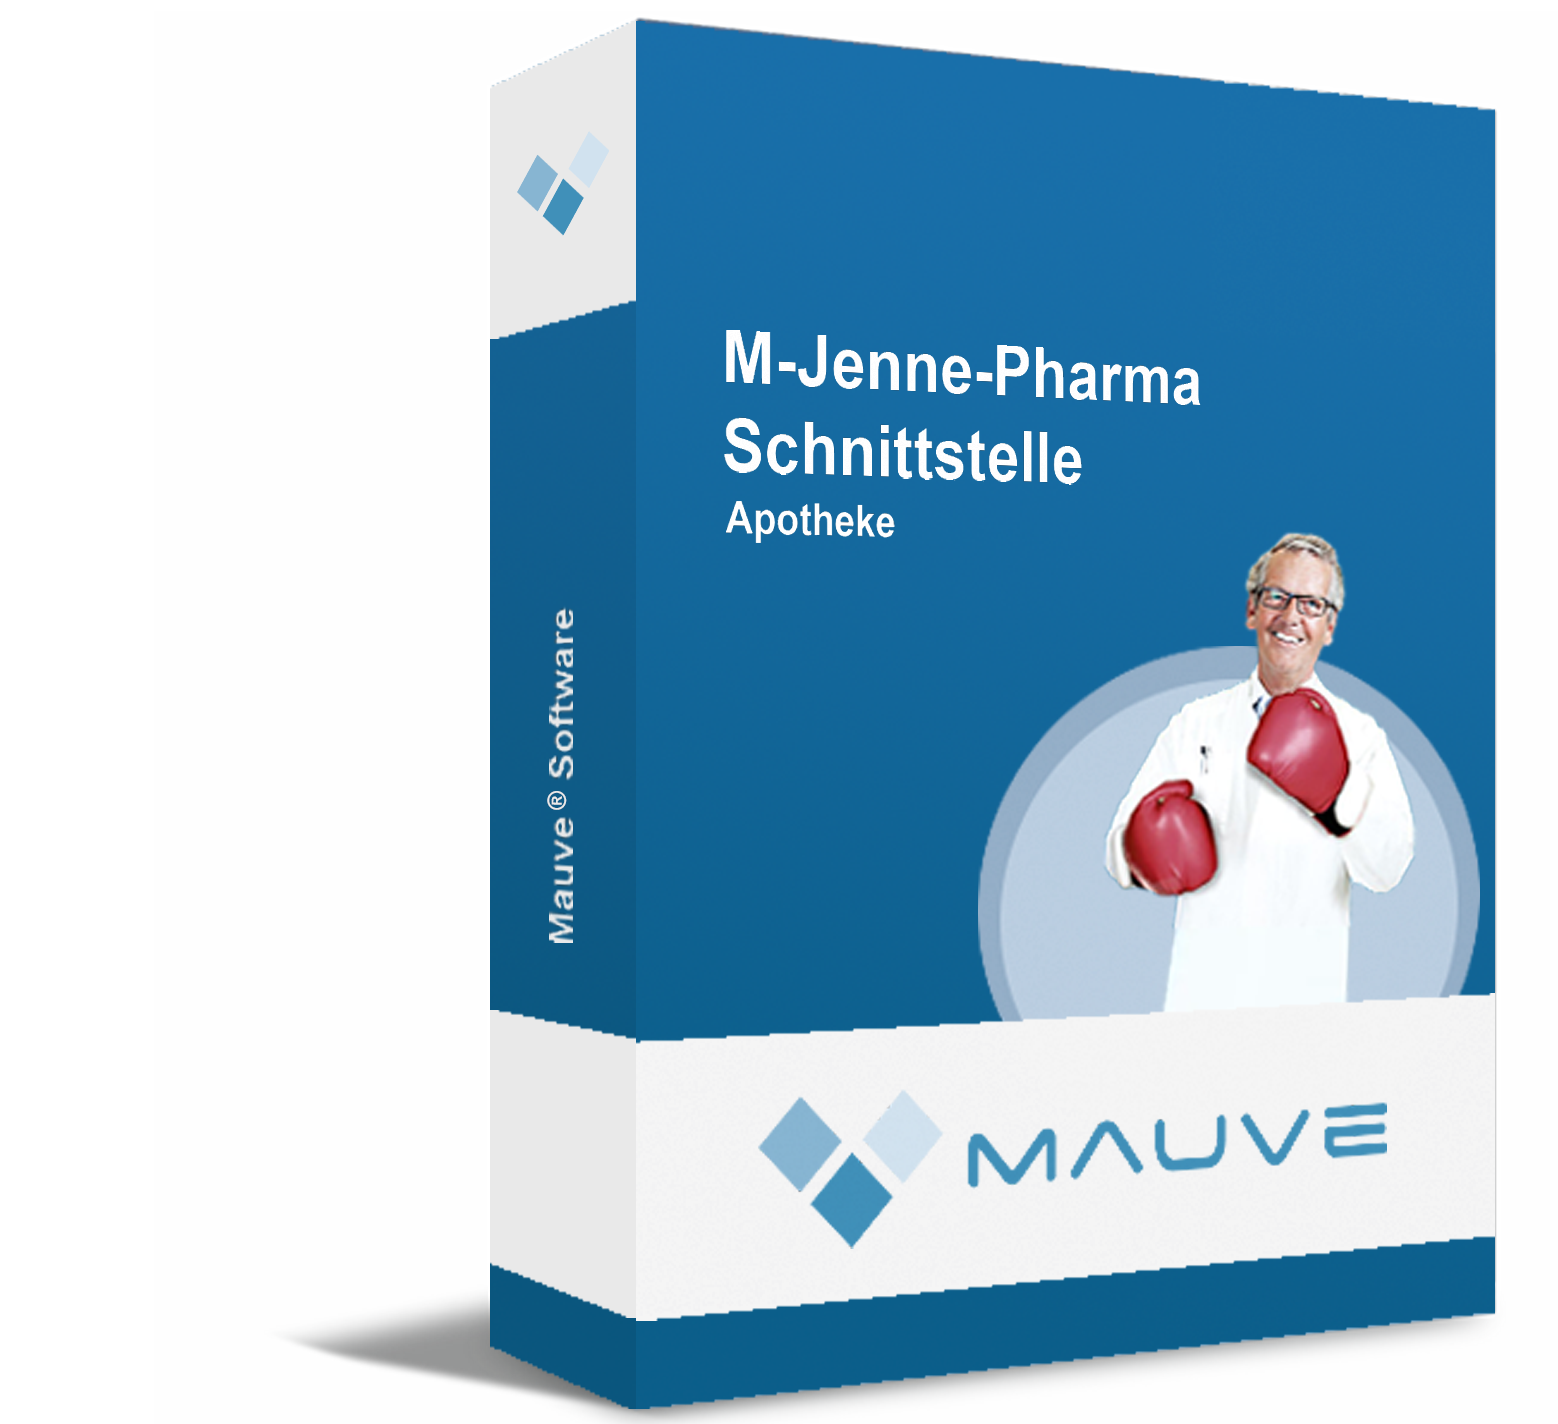 M-Jenne-Pharma Schnittstelle